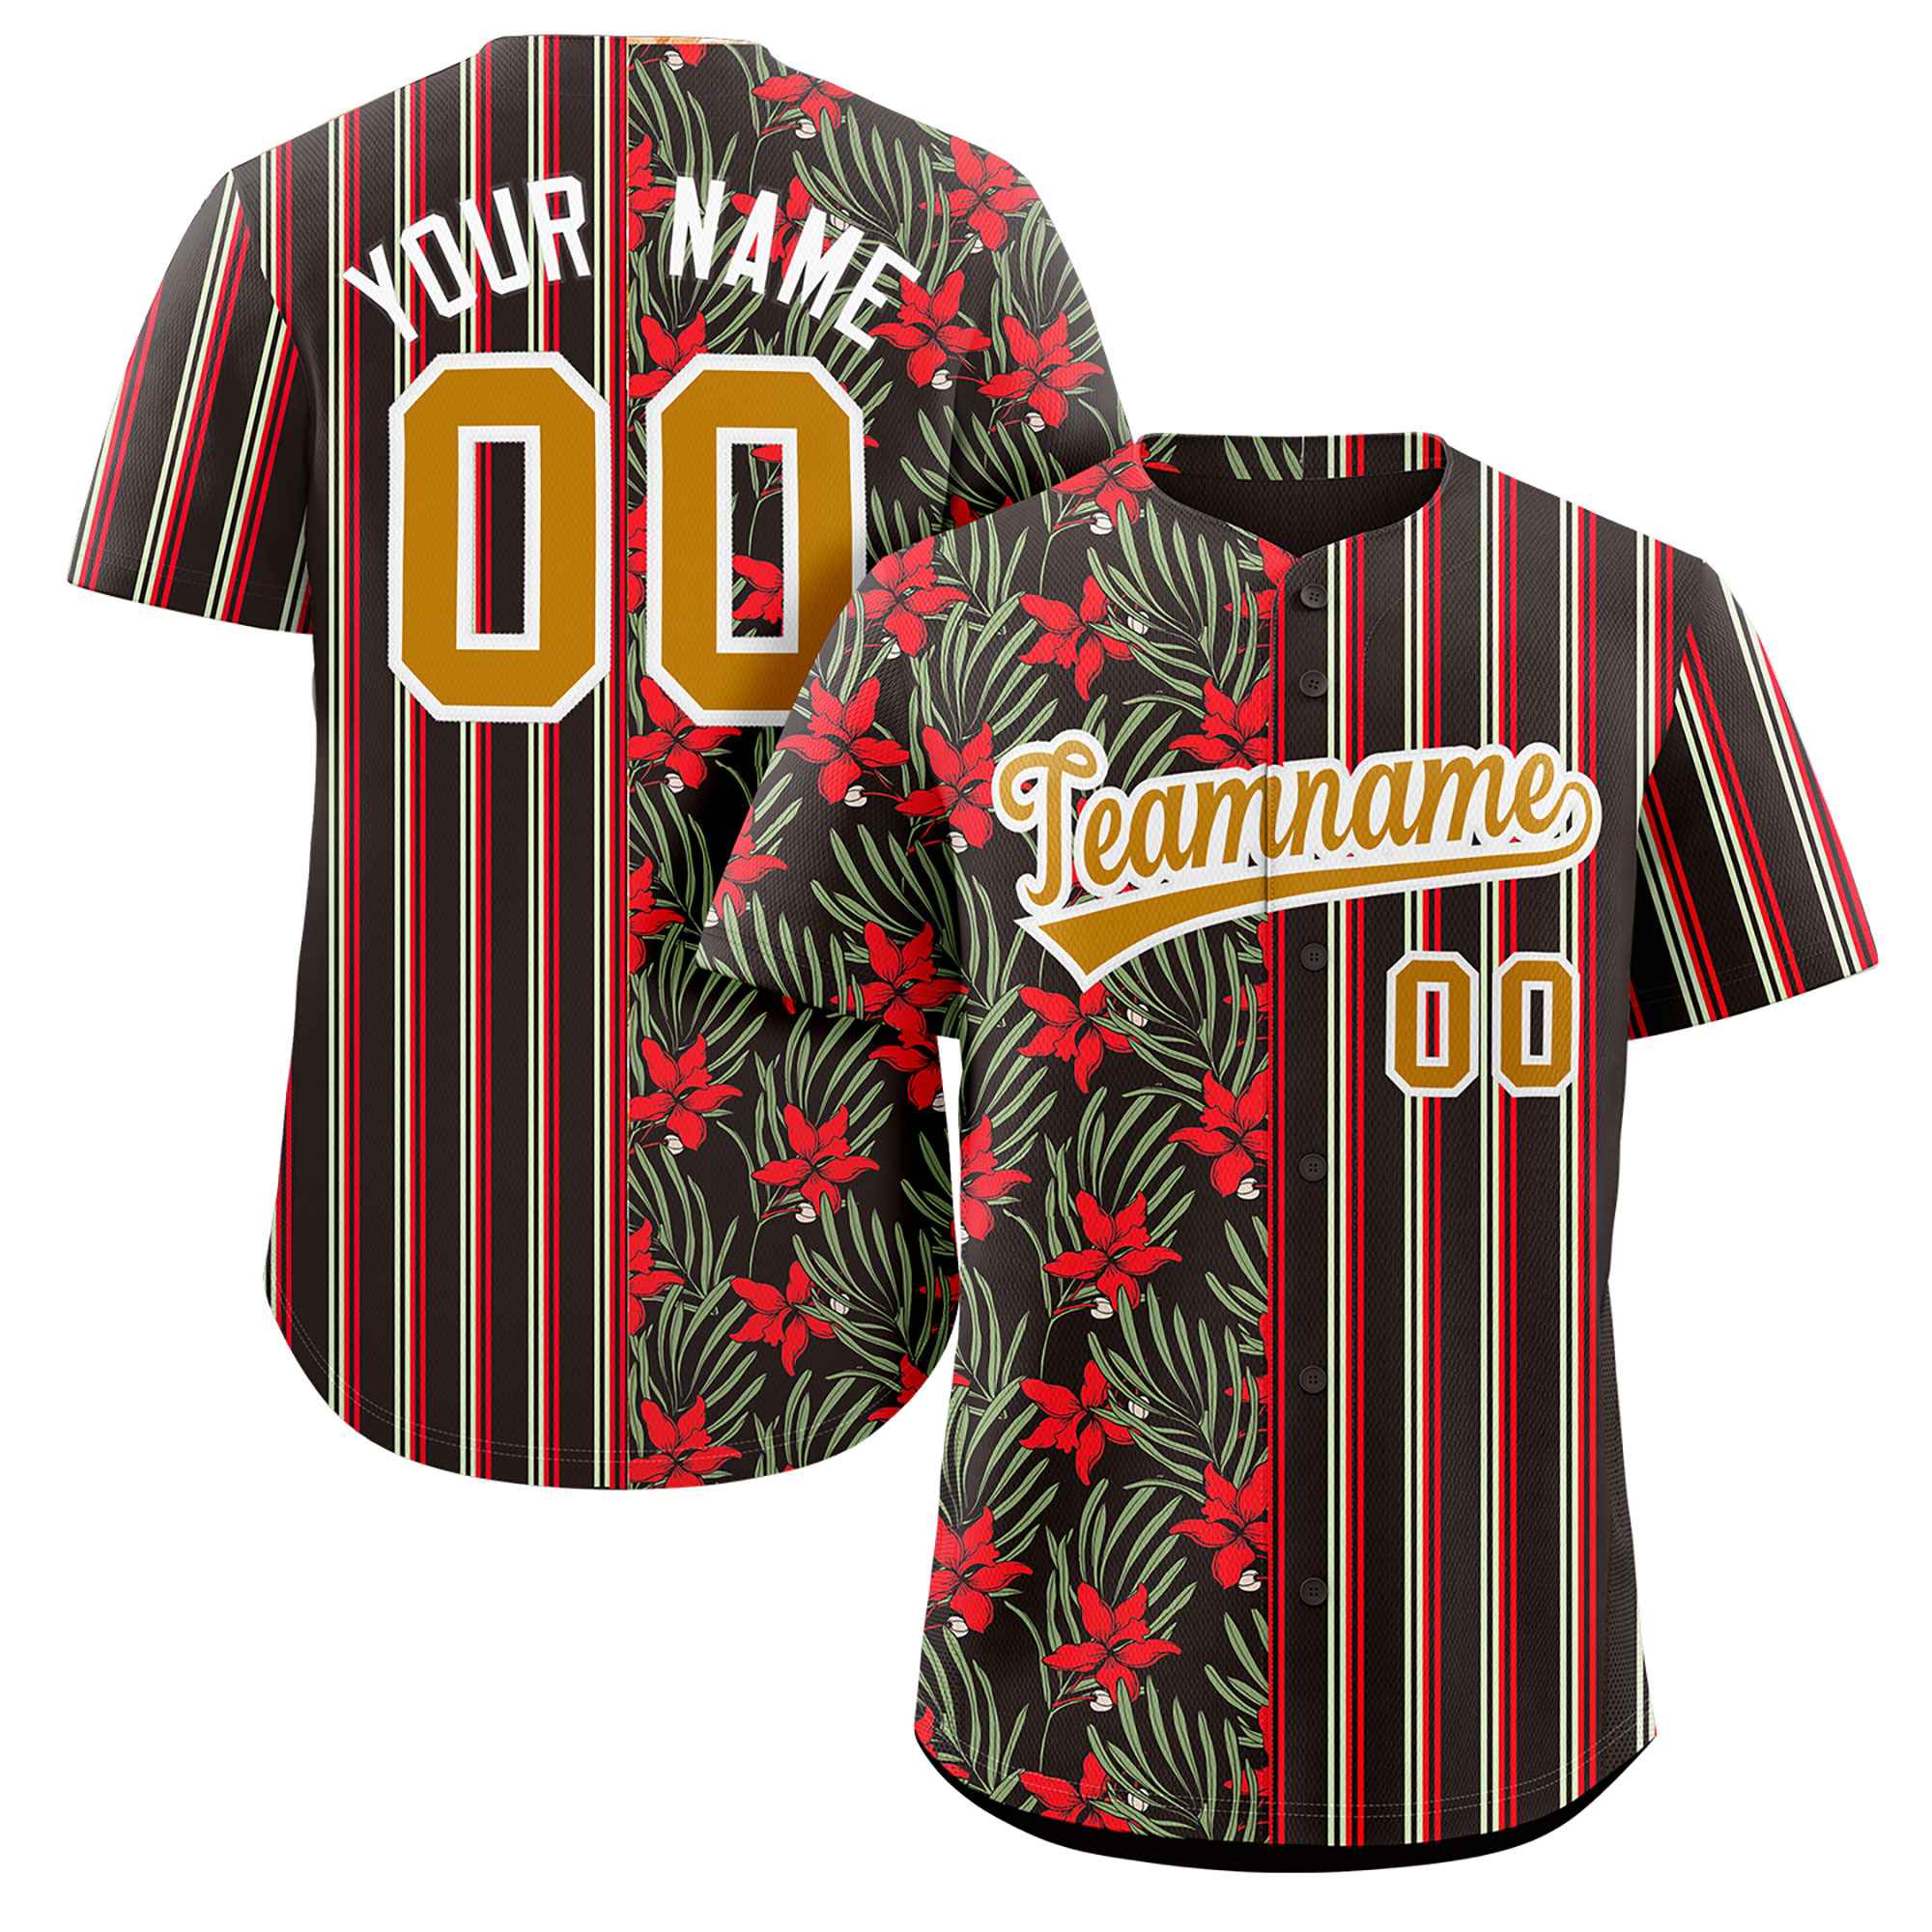 FANSIDEA Custom Black Old Gold-Red Sublimation Soccer Uniform Jersey Men's Size:S